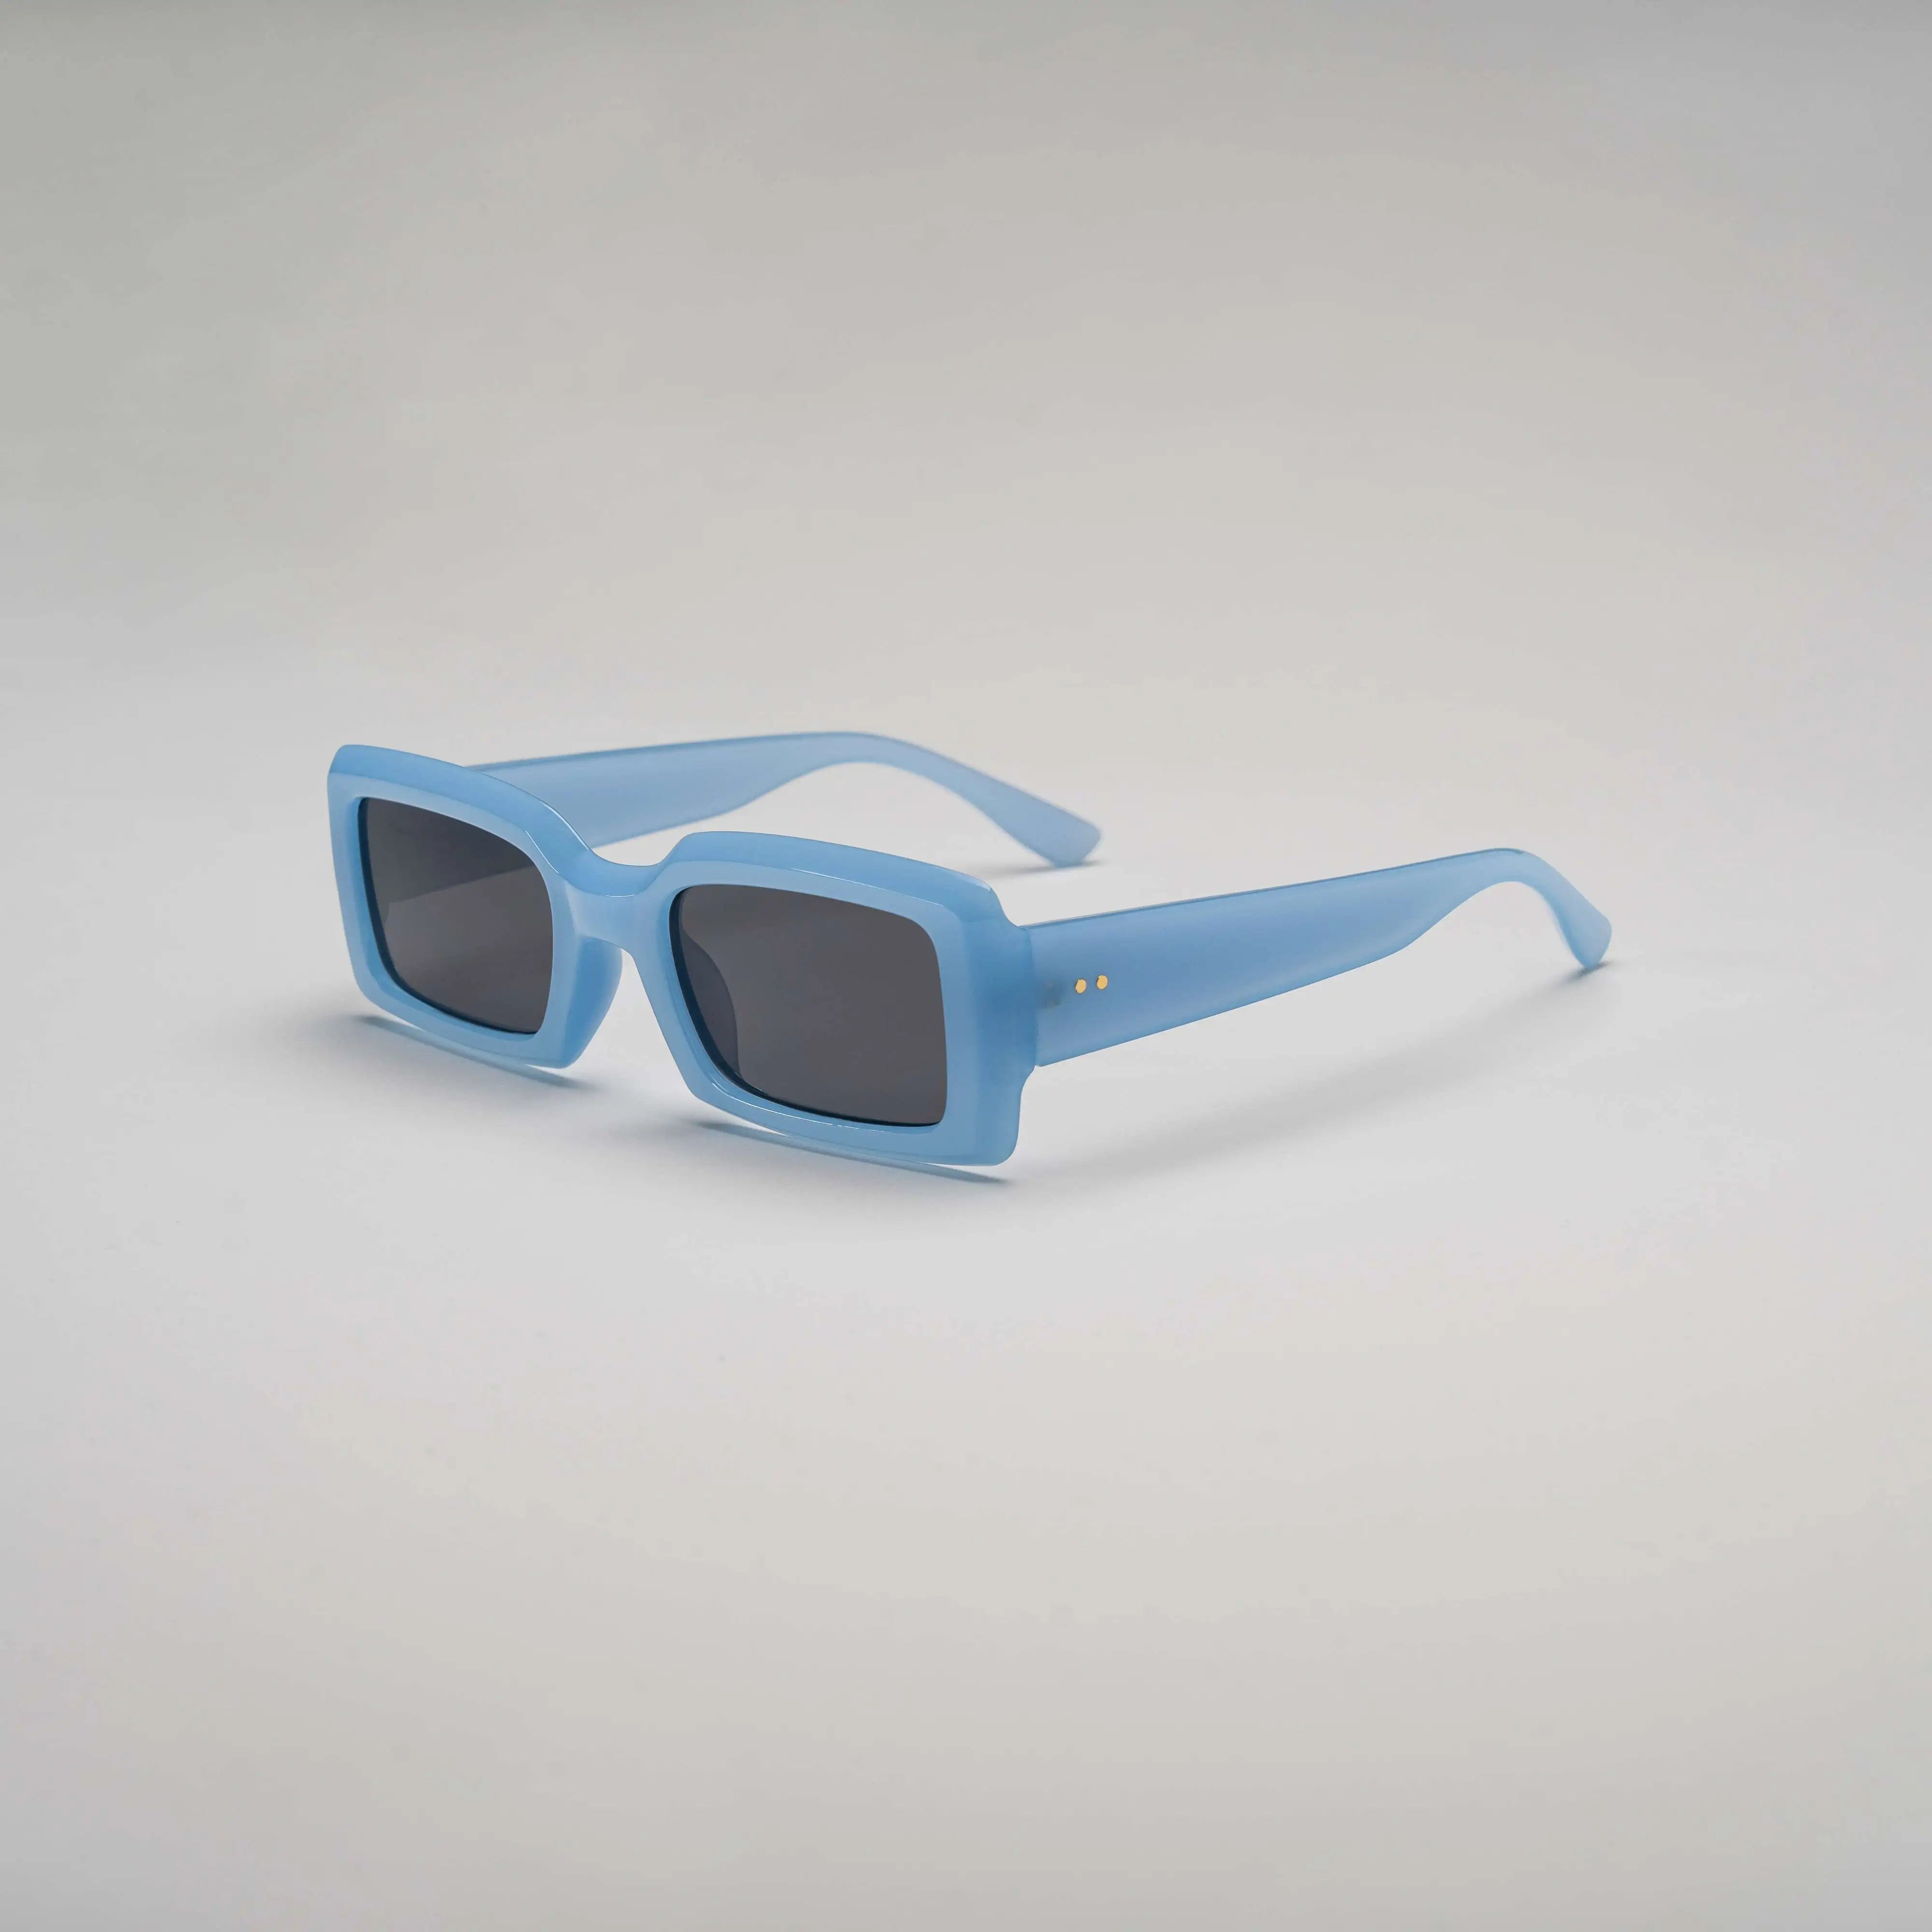 'Ocean Drive' Retro Square Sunglasses in Blue